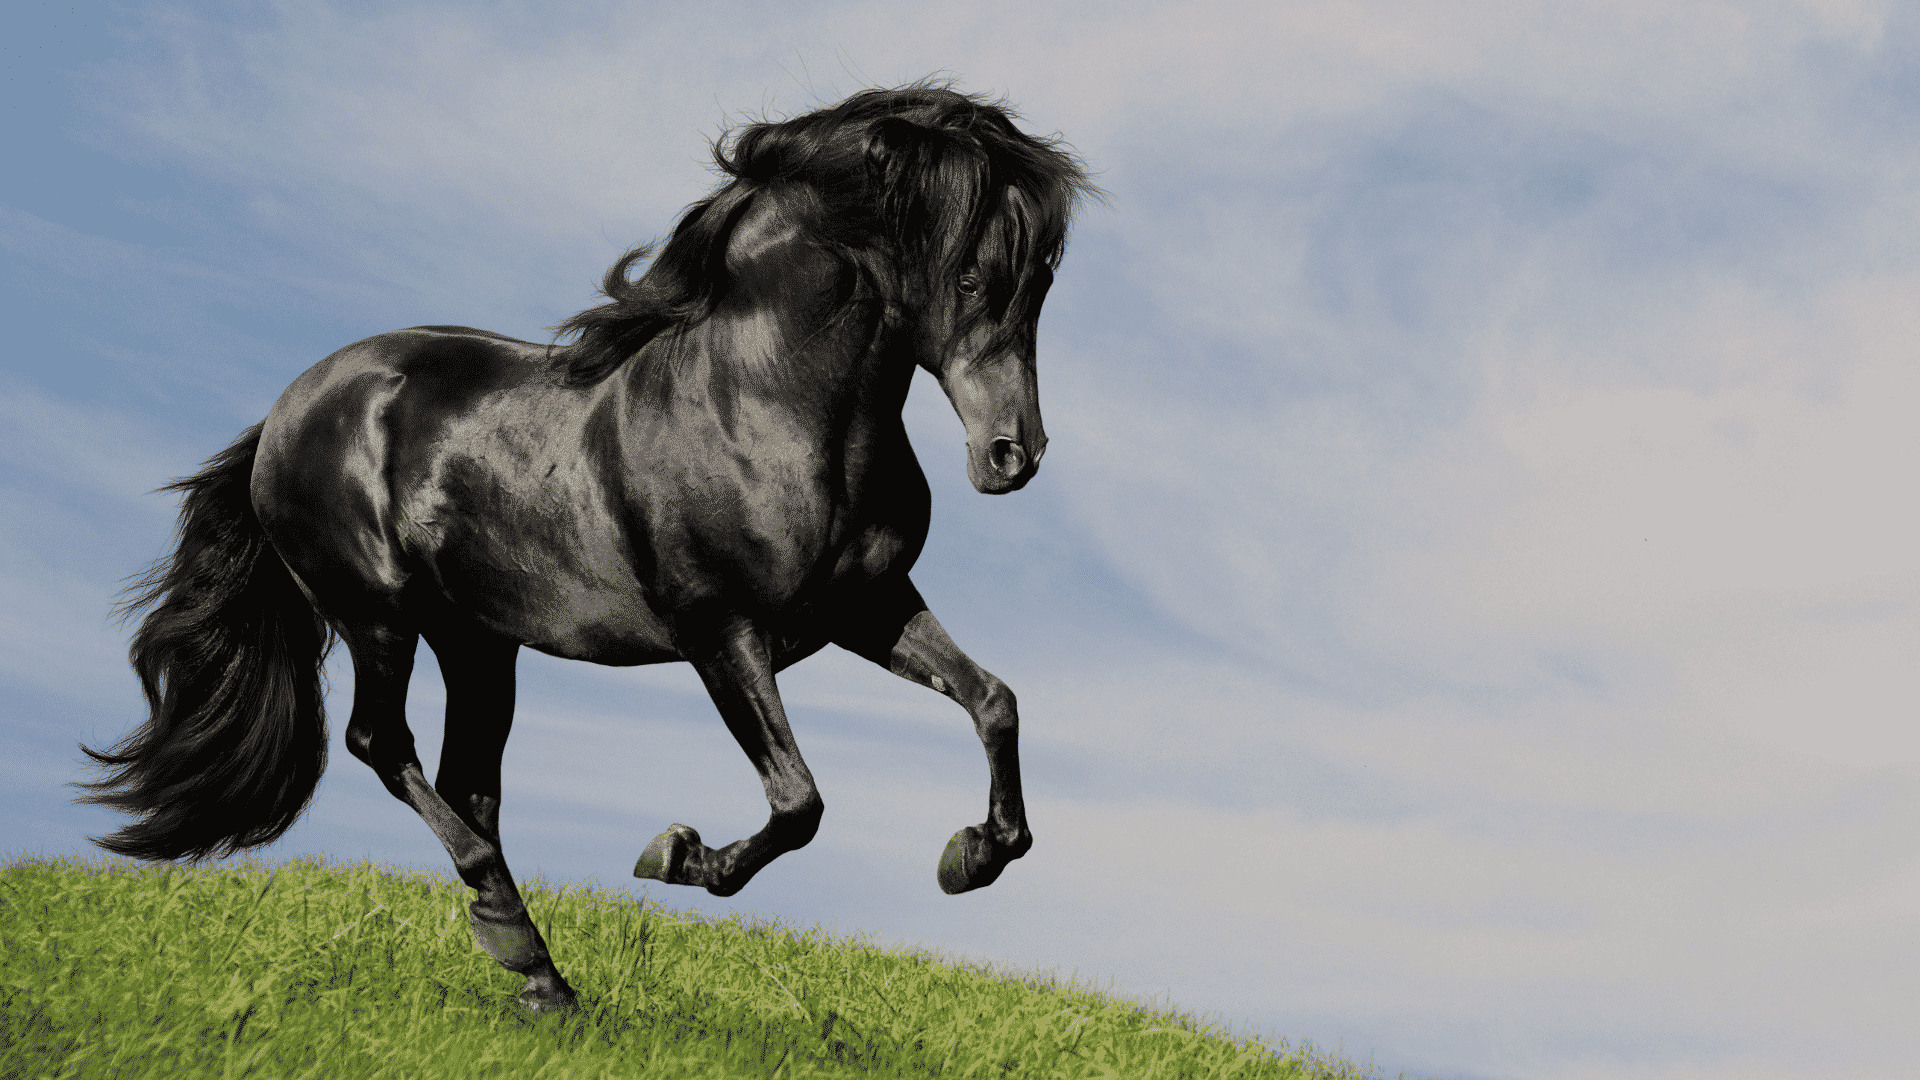 → Sonhar Com Cavalo - Descubra os Significados e Previsões